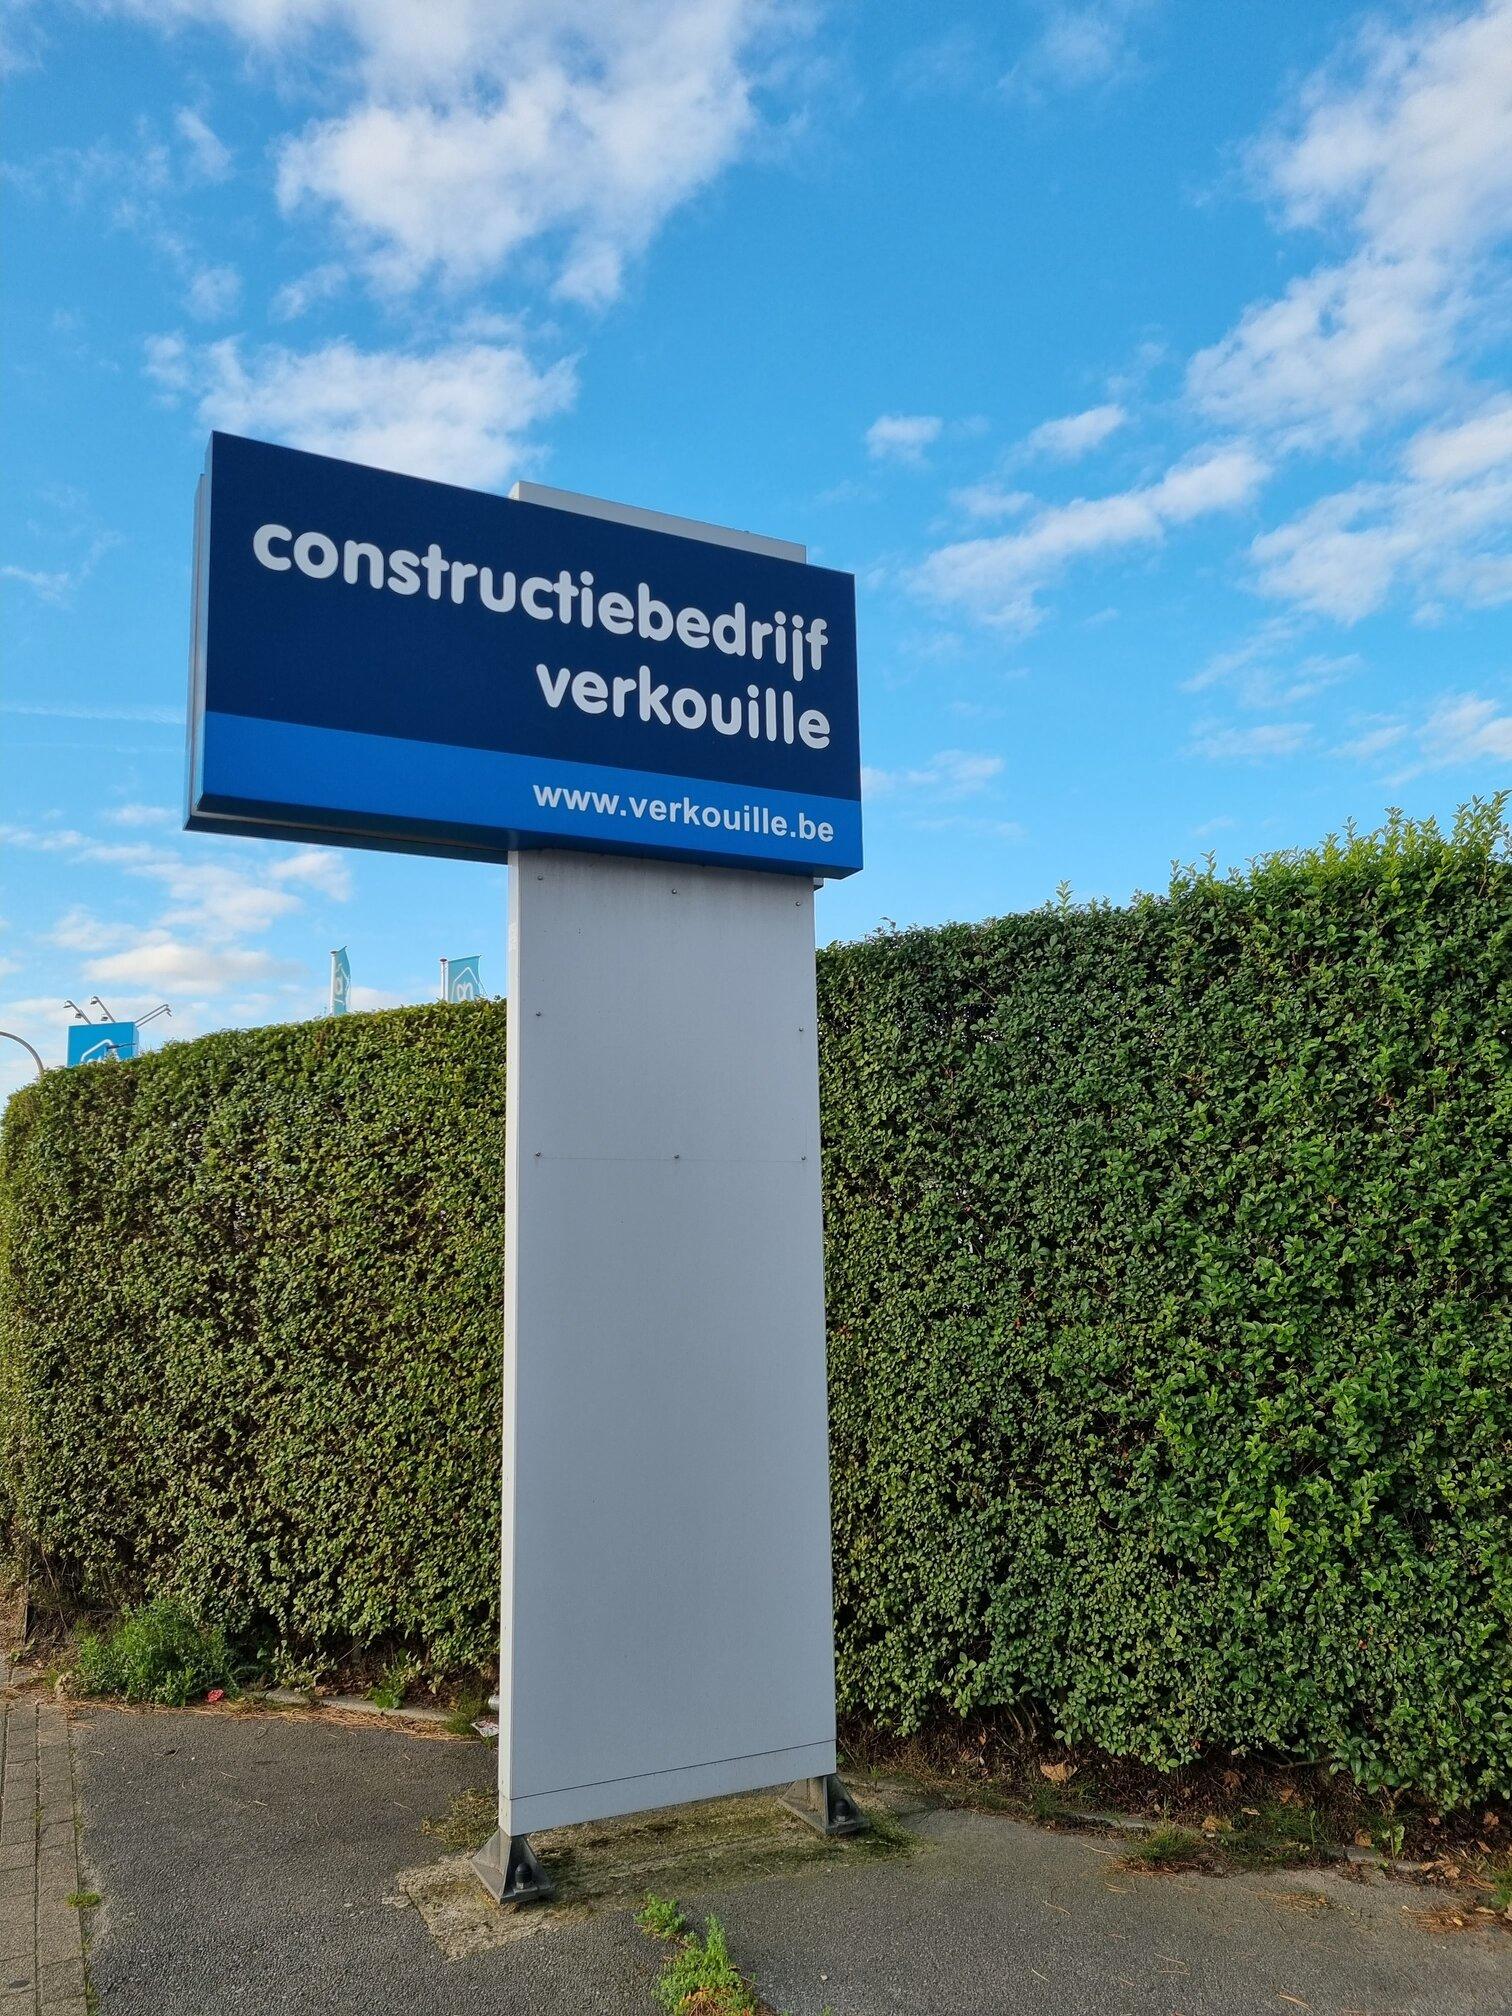 Constructiebedrijf Verkouille is een met Verschoore sinds 2020.